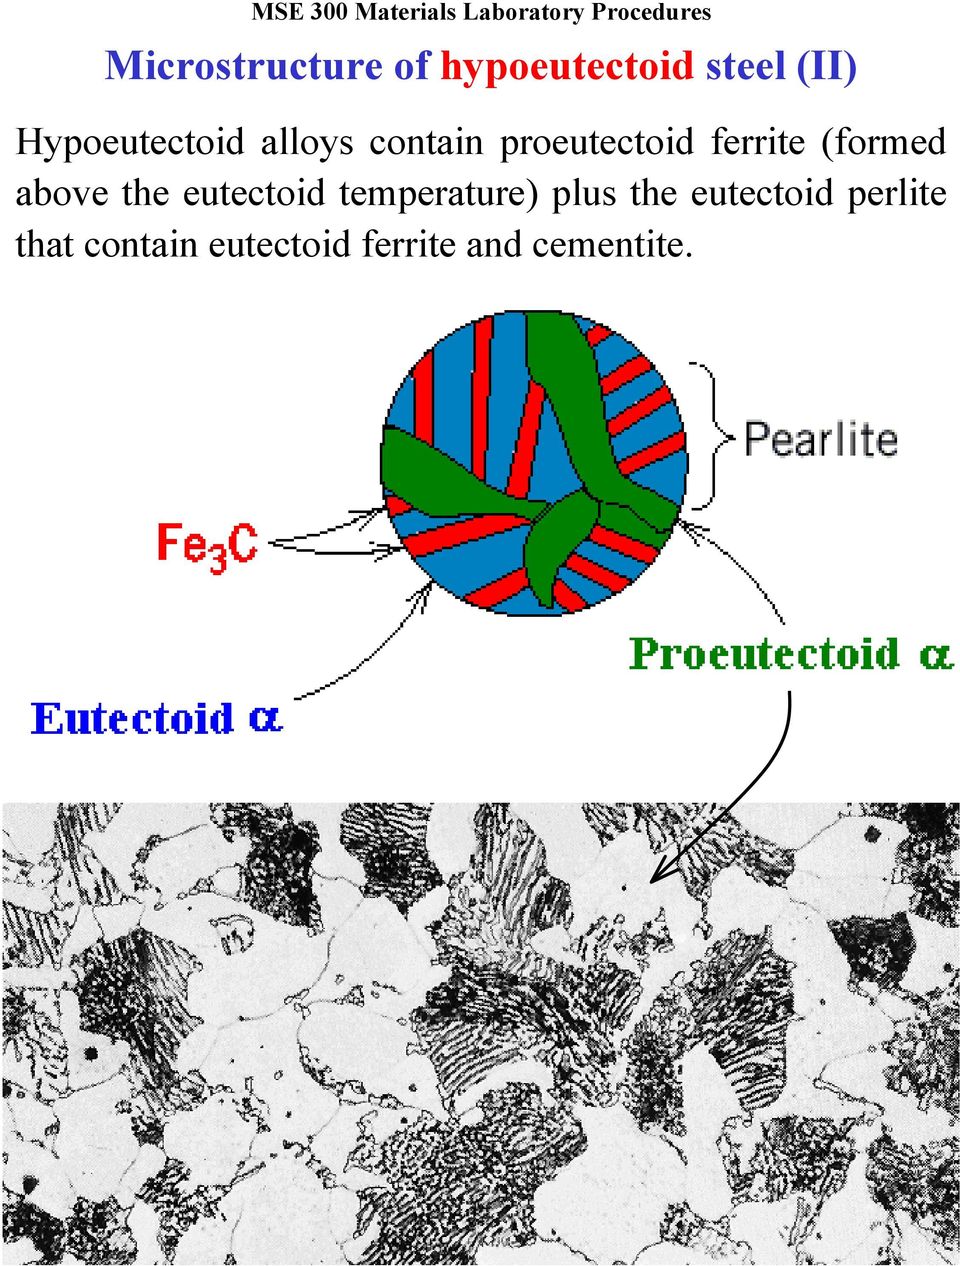 temperature) plus the eutectoid perlite that contain eutectoid